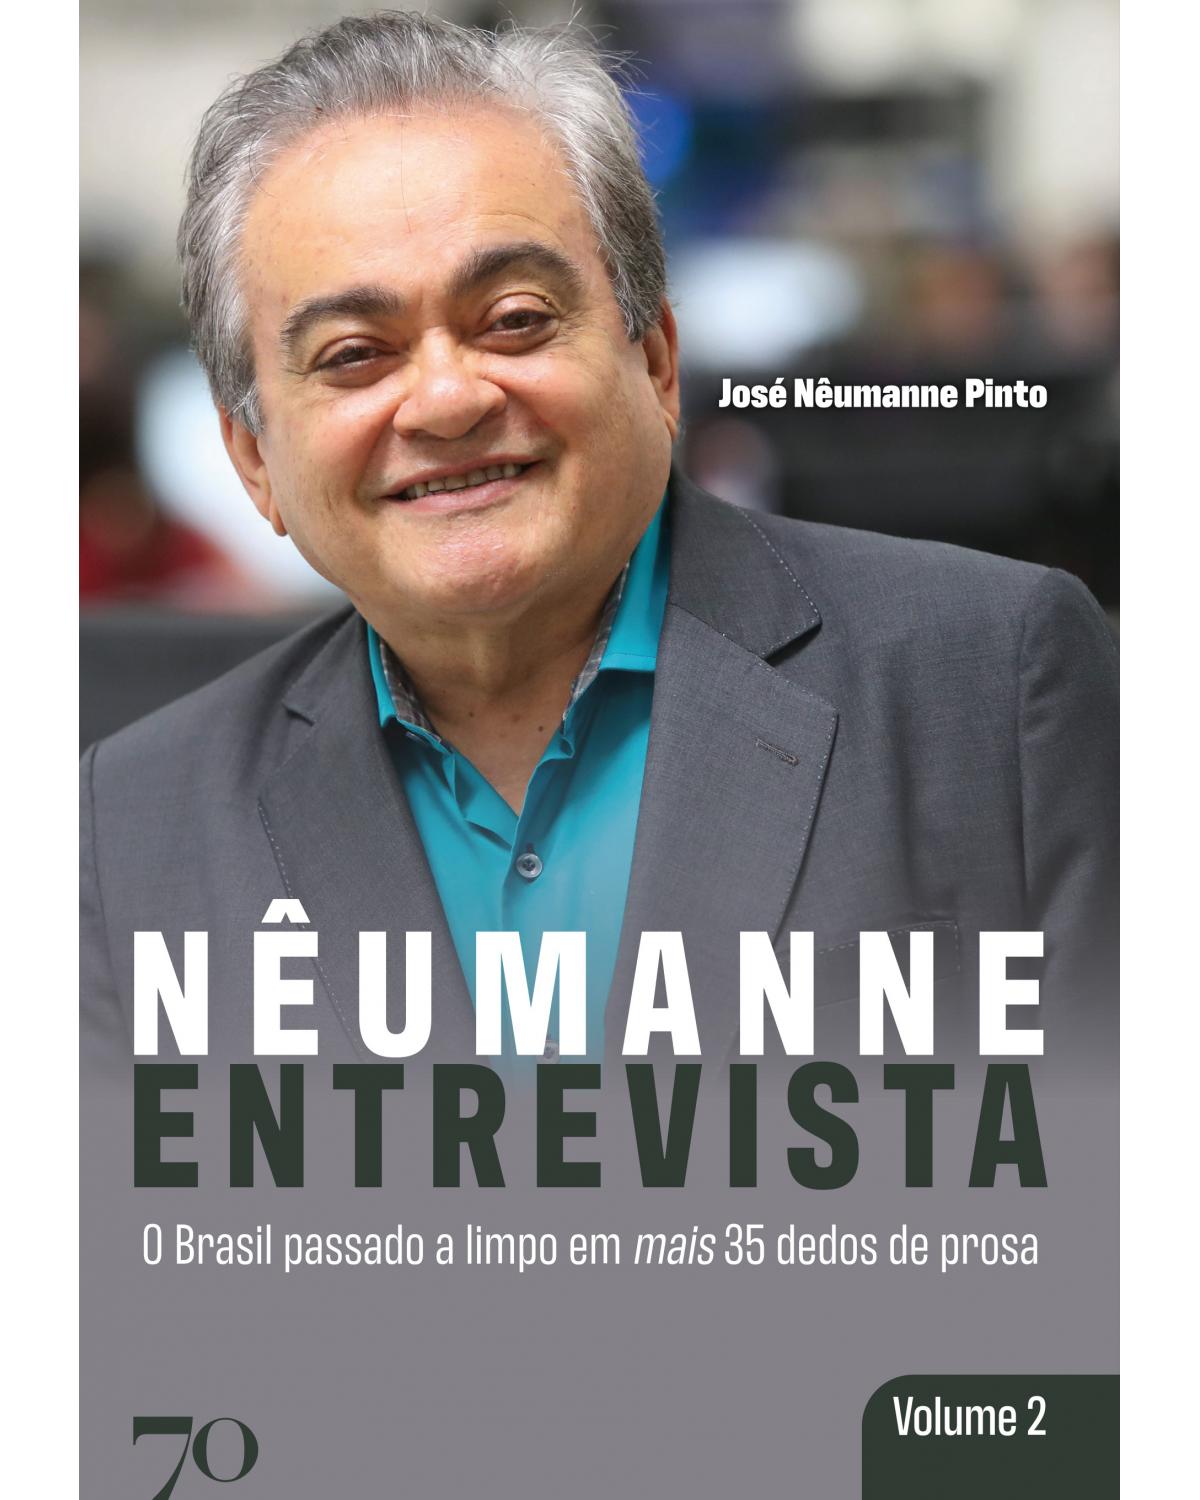 Nêumanne entrevista - Volume 2: o Brasil passado a limpo em mais 35 dedos de prosa - 1ª Edição | 2020